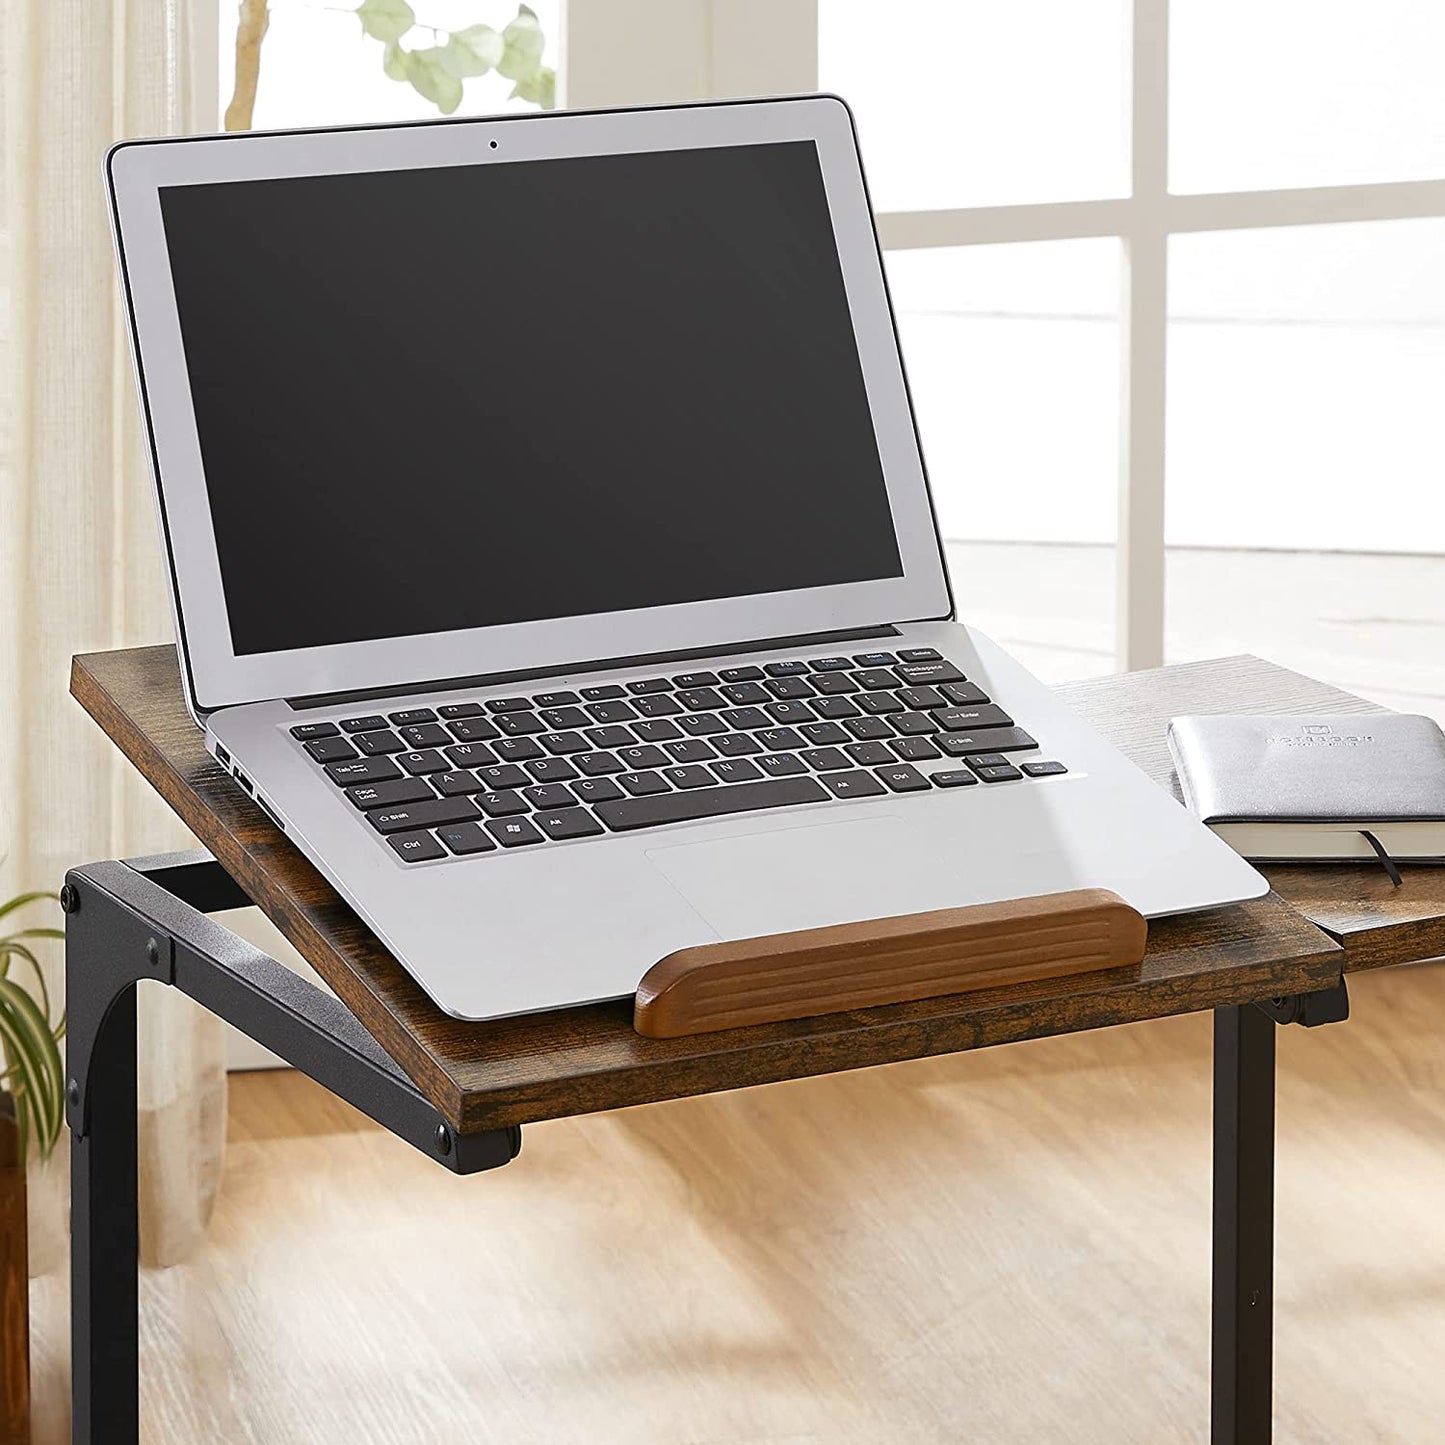 Nancy's Carbonear Laptop Table - Work Table - Adjustable Table Top - On Wheels - Engineered Wood - Metal - Brown - Black - 55 x 35 x 66 cm